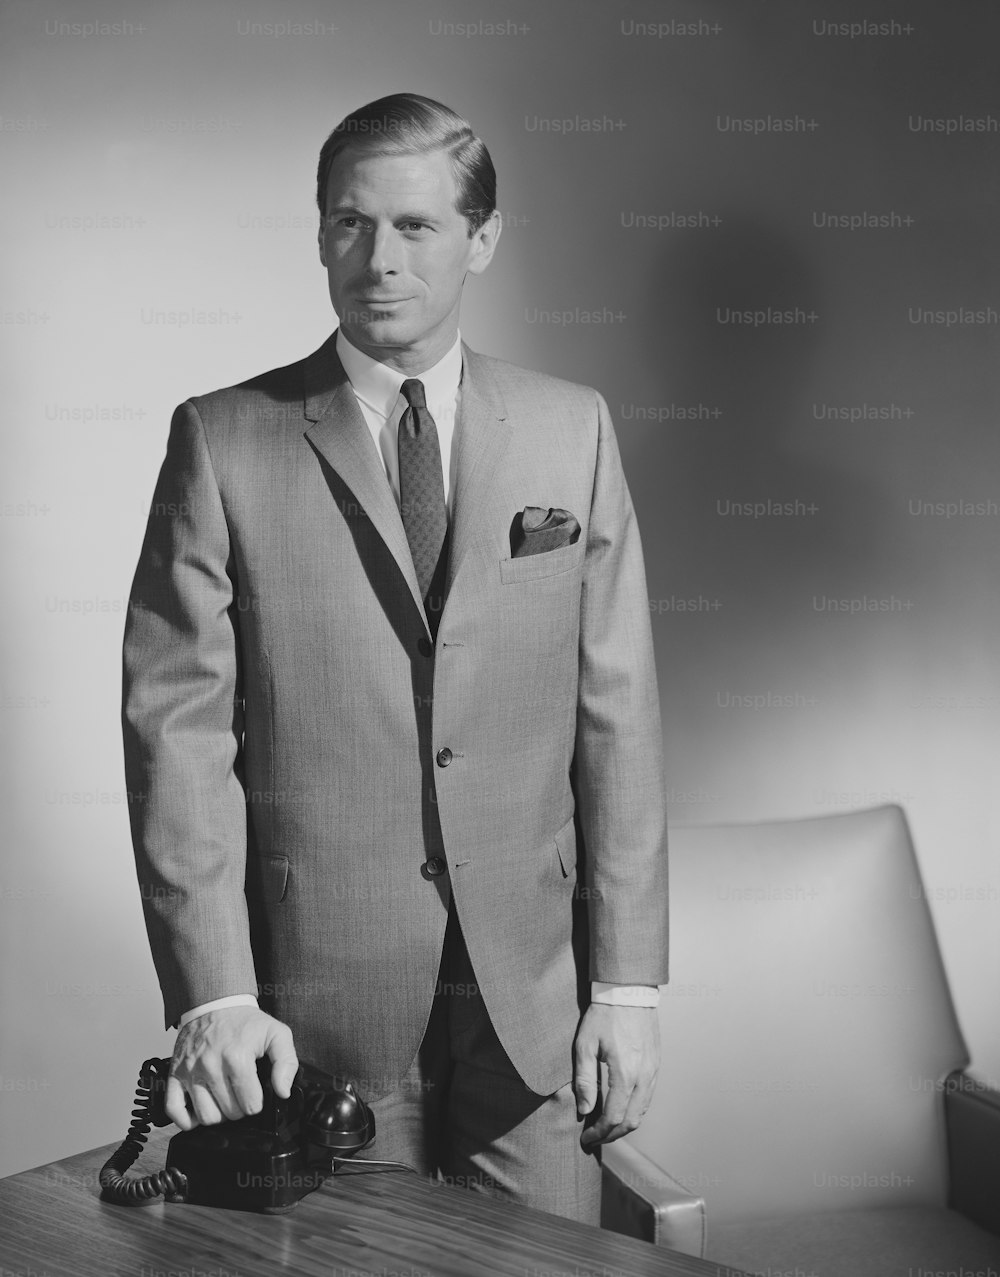 スーツを着た男性の白黒写真